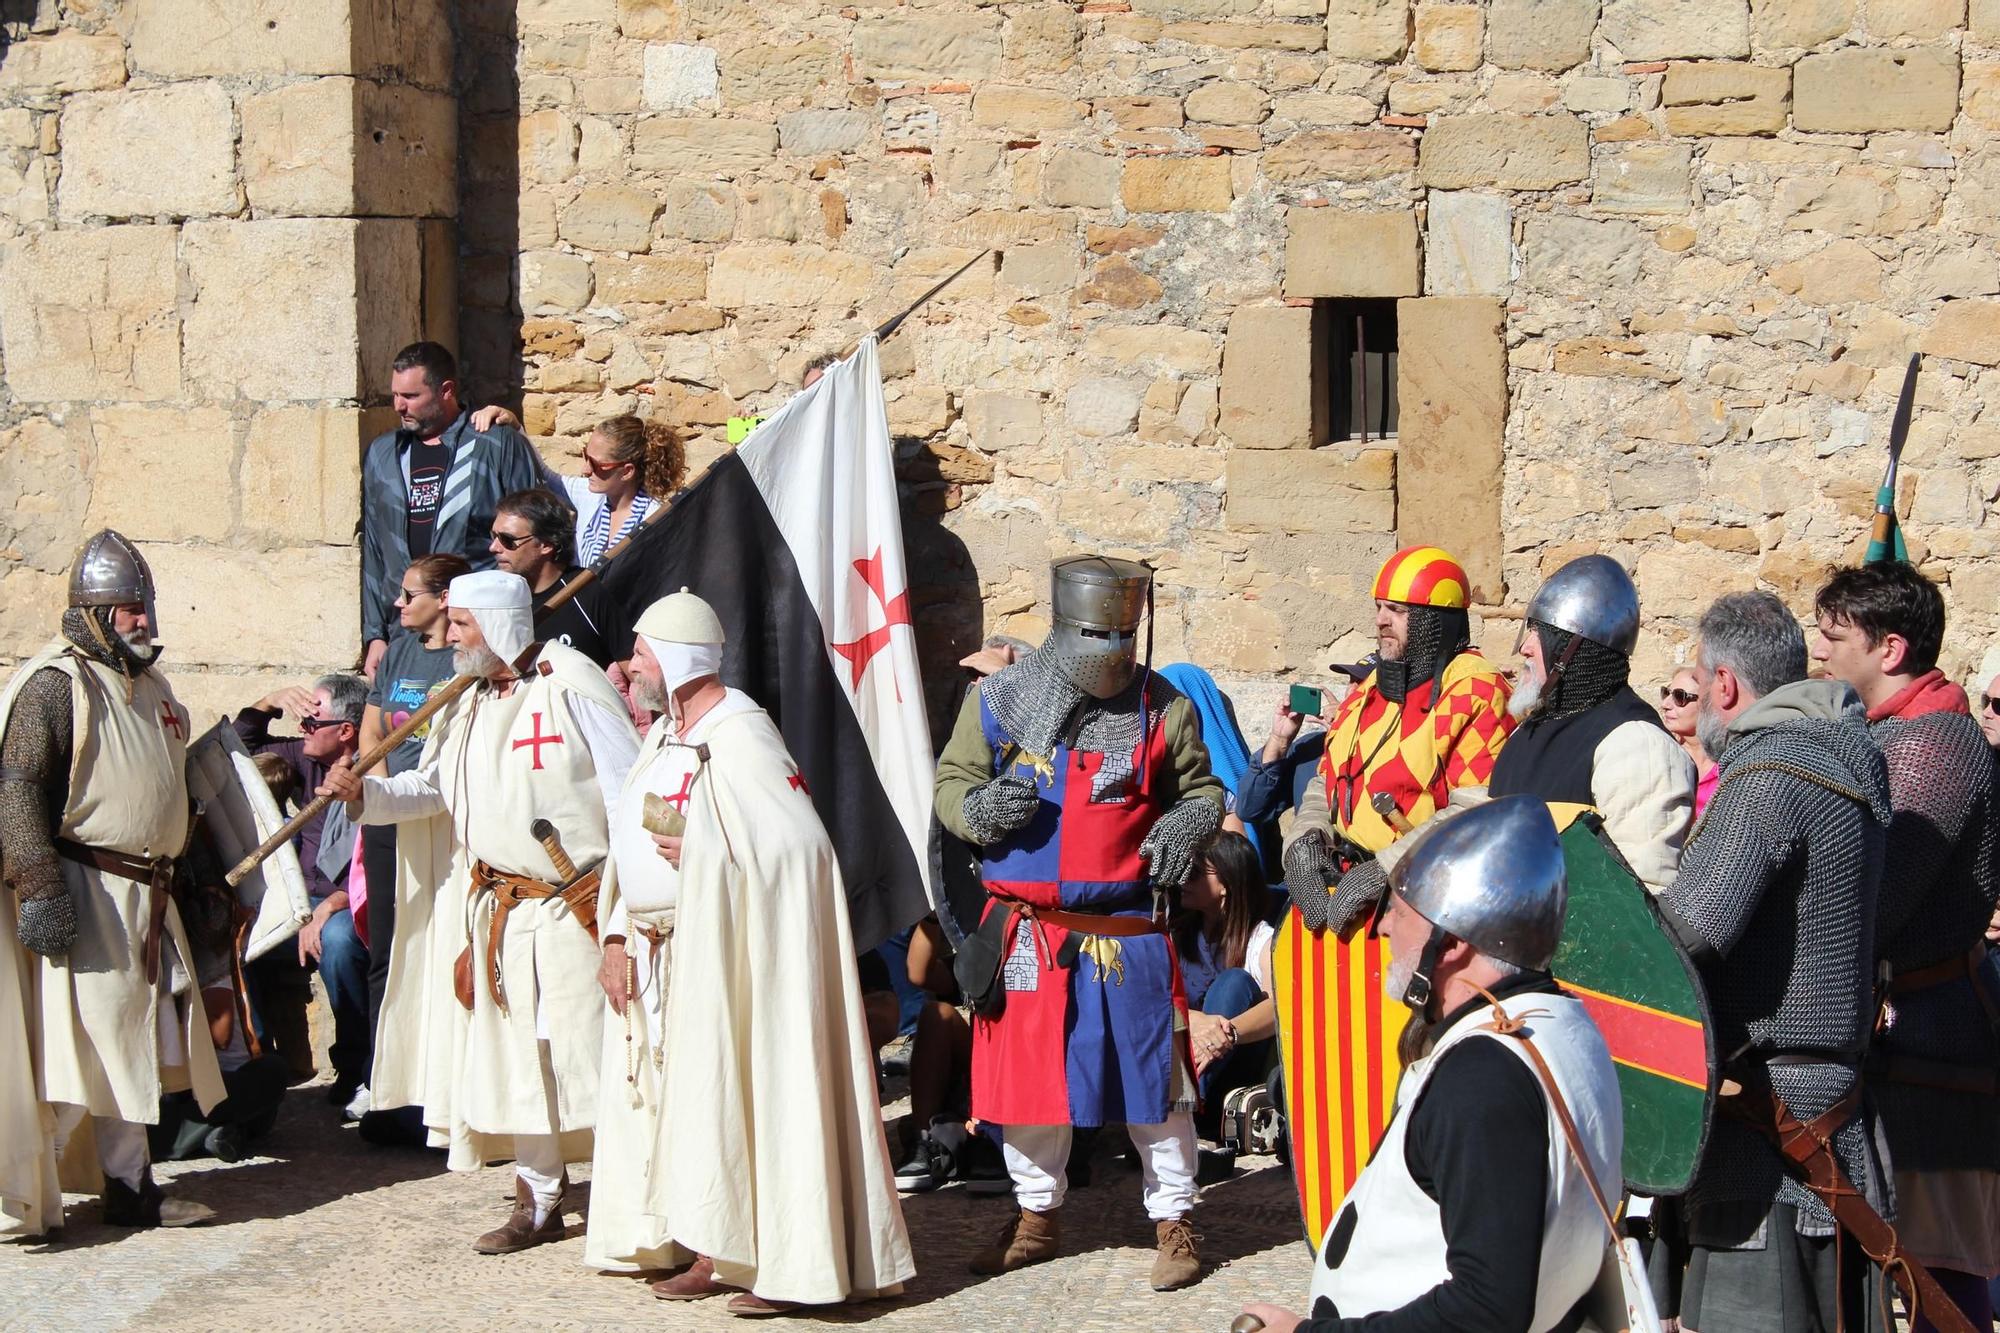 GALERÍA | Culla regresa al medievo con su gran recreación histórica ‘Culla 1233’